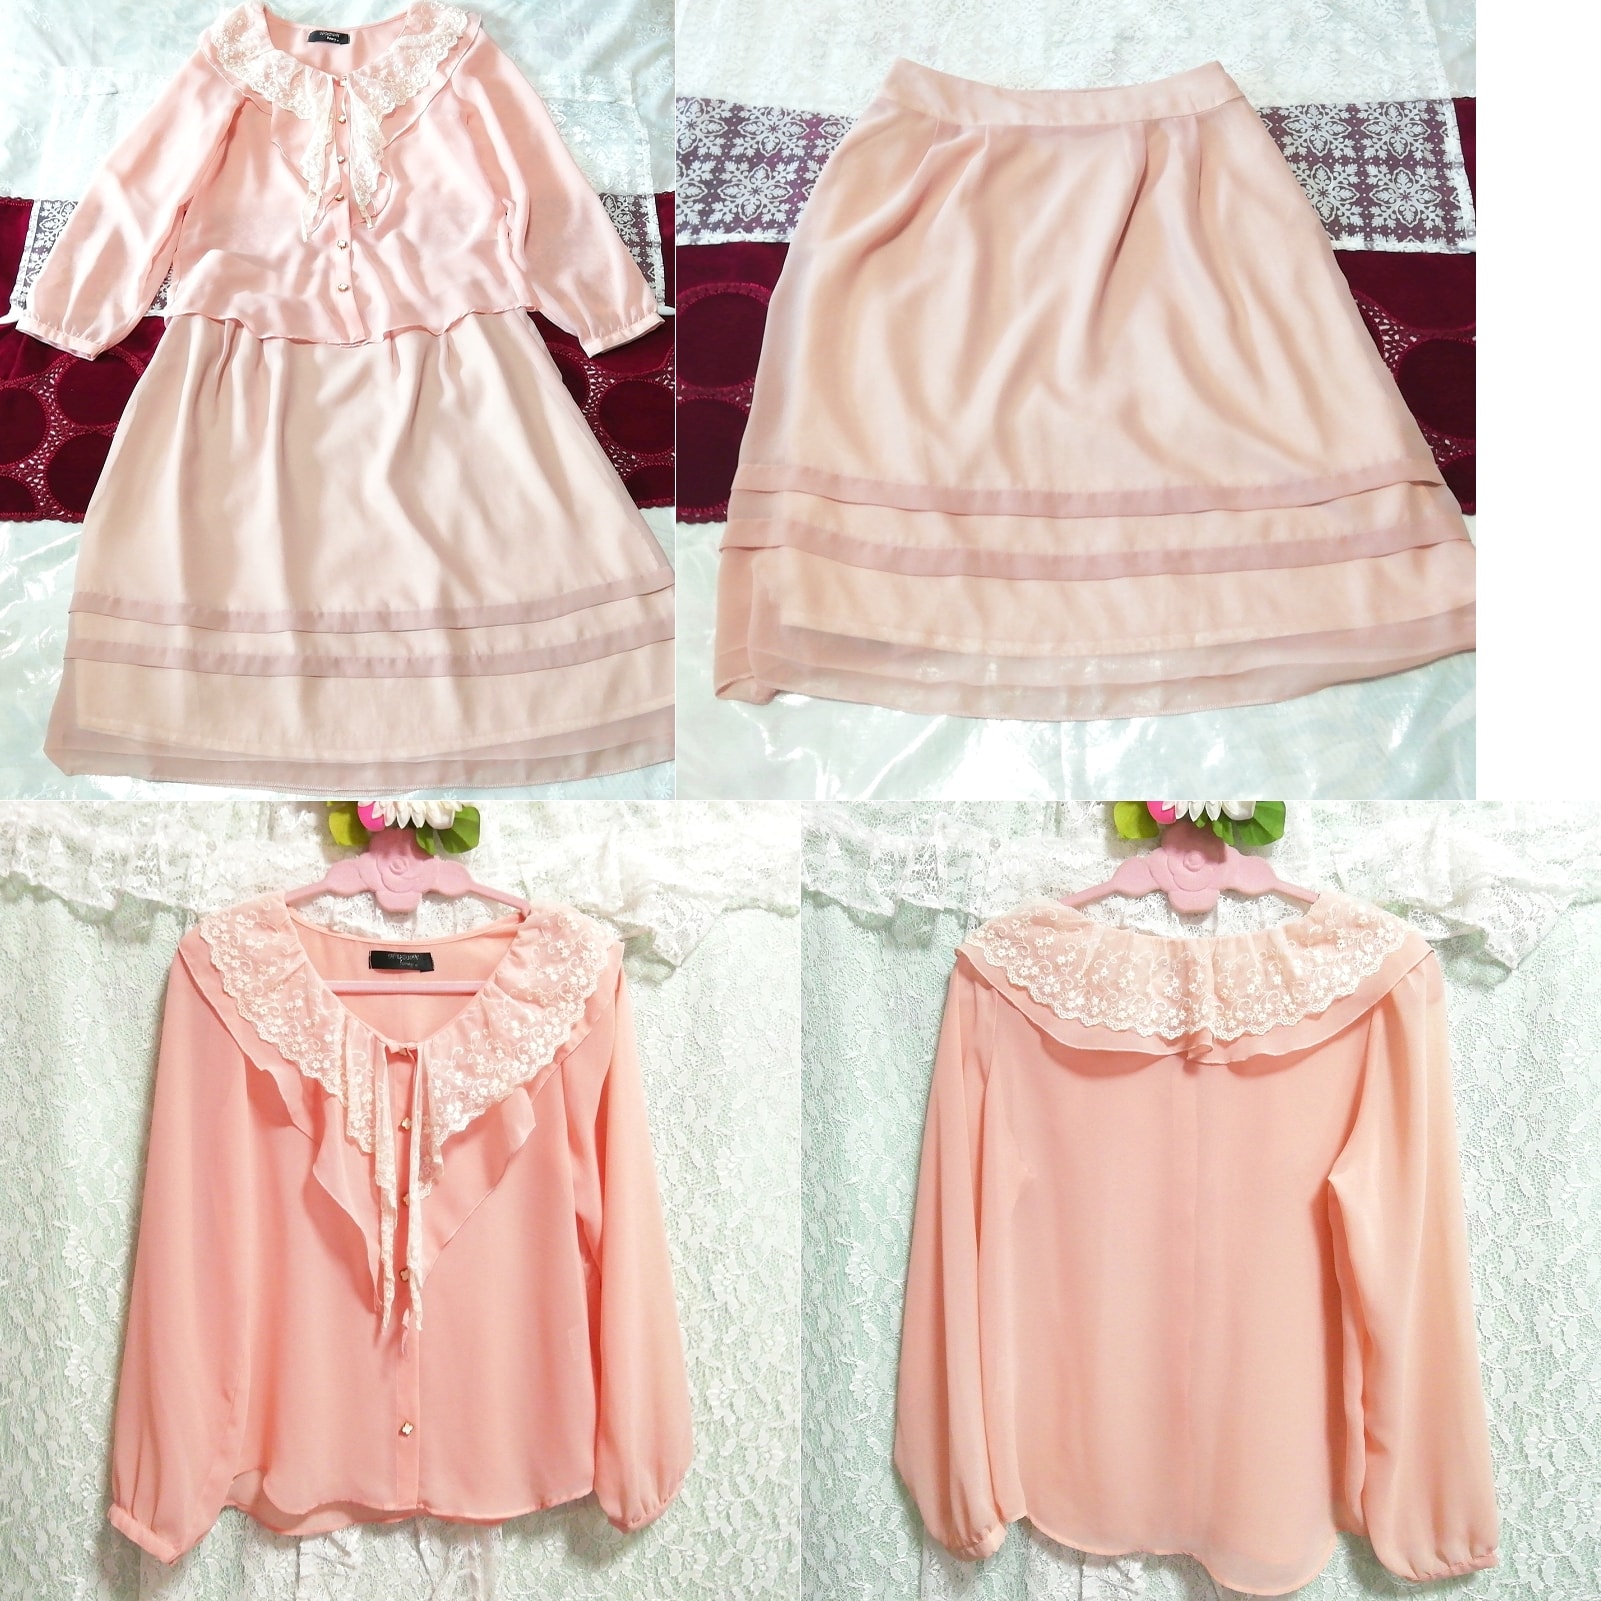 Pink chiffon white lace tunic negligee nightgown chiffon skirt dress 2P, fashion, ladies' fashion, nightwear, pajamas